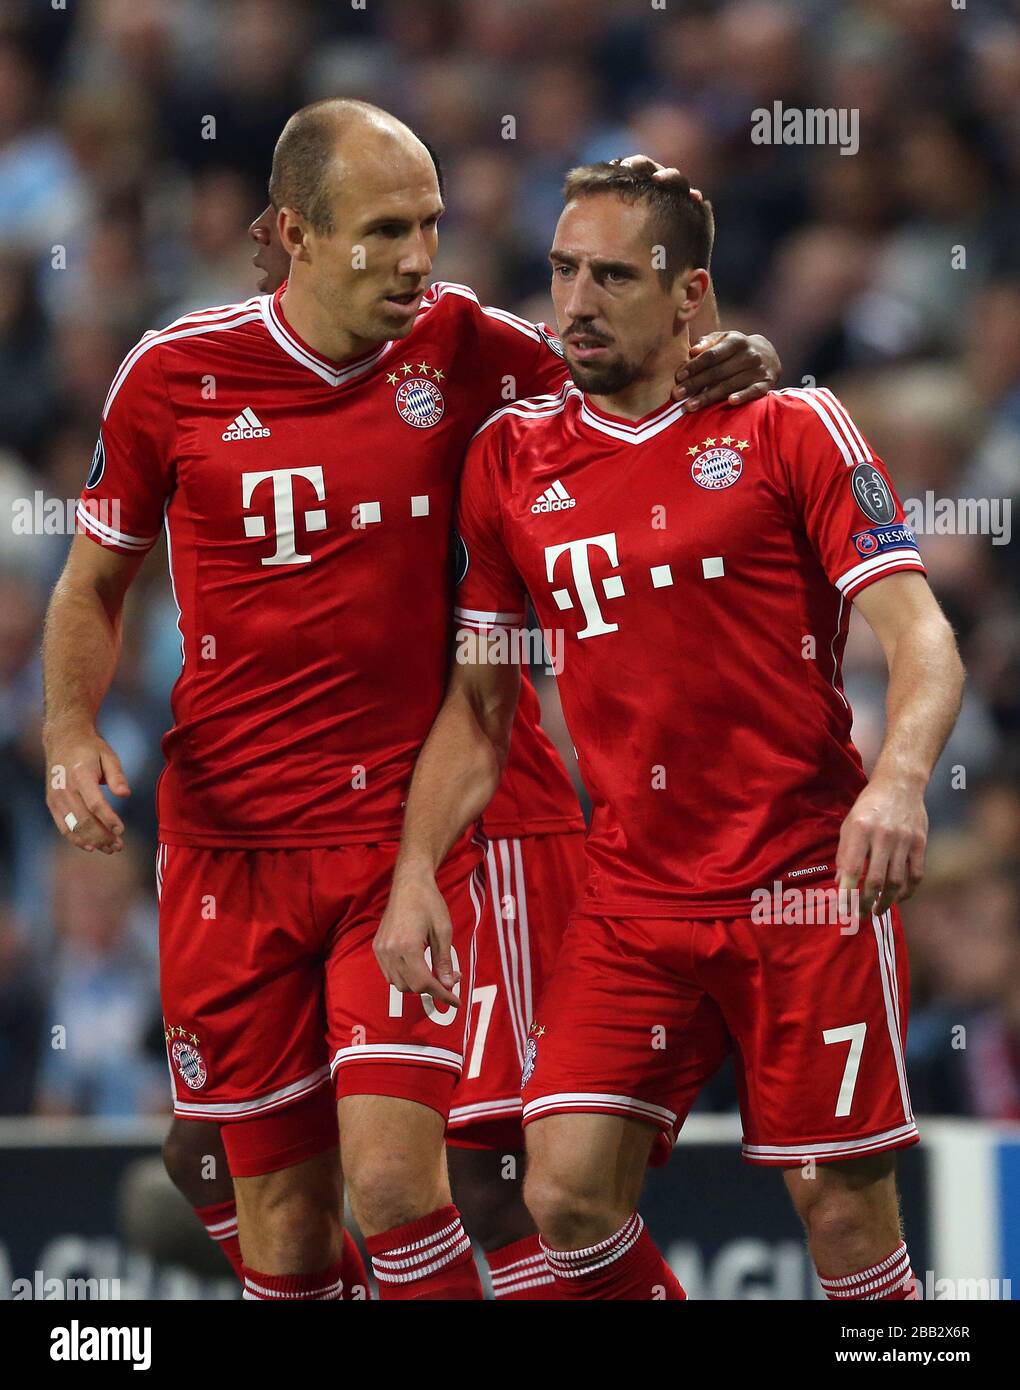 Bayern Munich's Arjen Robben (left) and Franck Ribery Stock Photo - Alamy